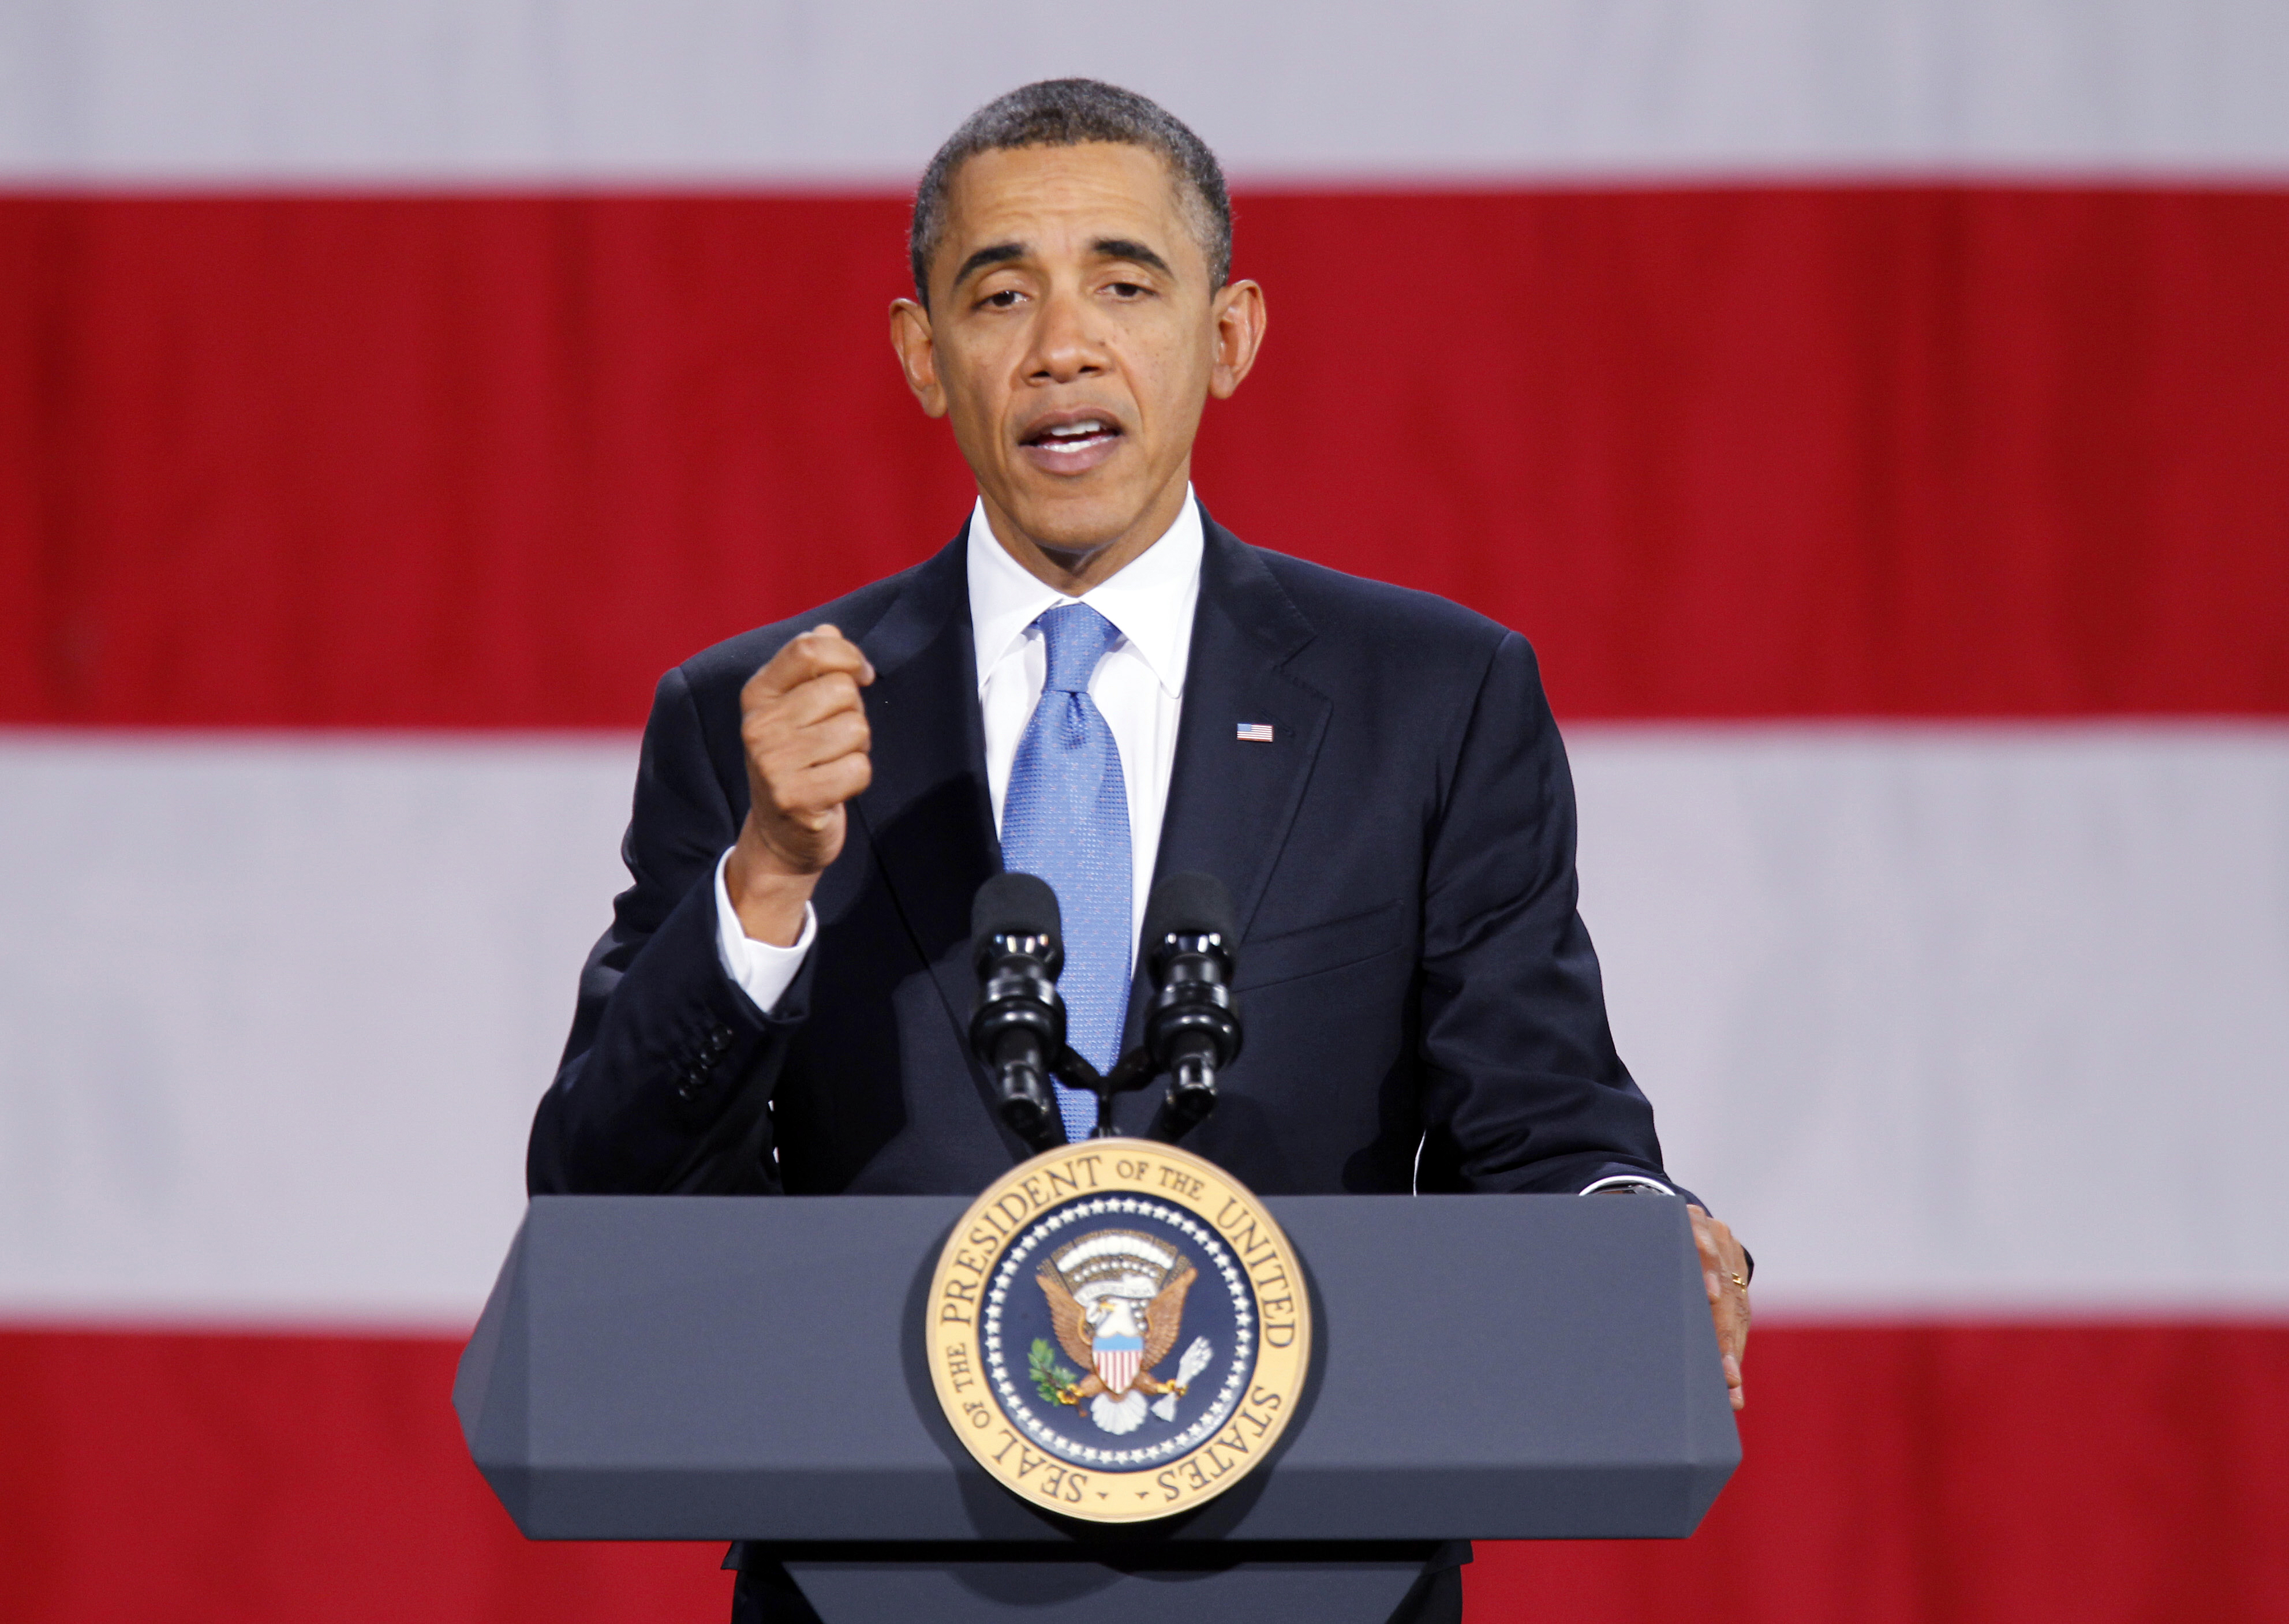 Fredspriset, Barack Obama, USA, Terror, Nobelpriset, Pentagon, Iran